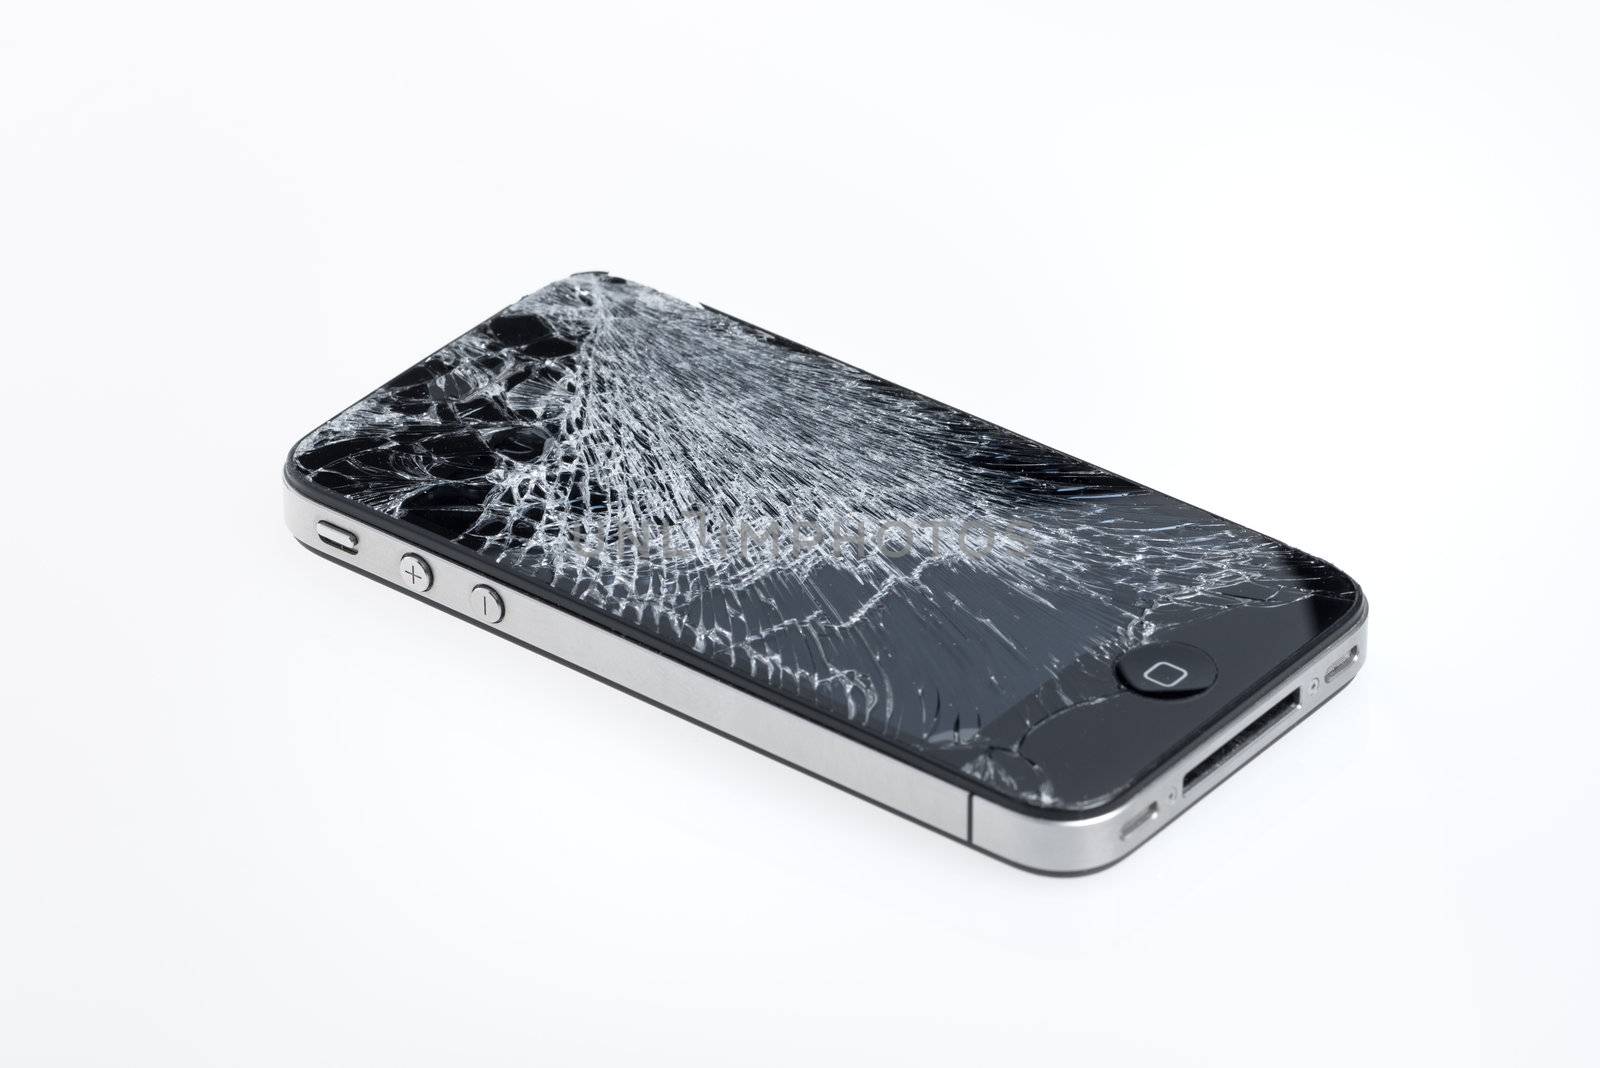 Broken Apple iPhone 4 by bloomua